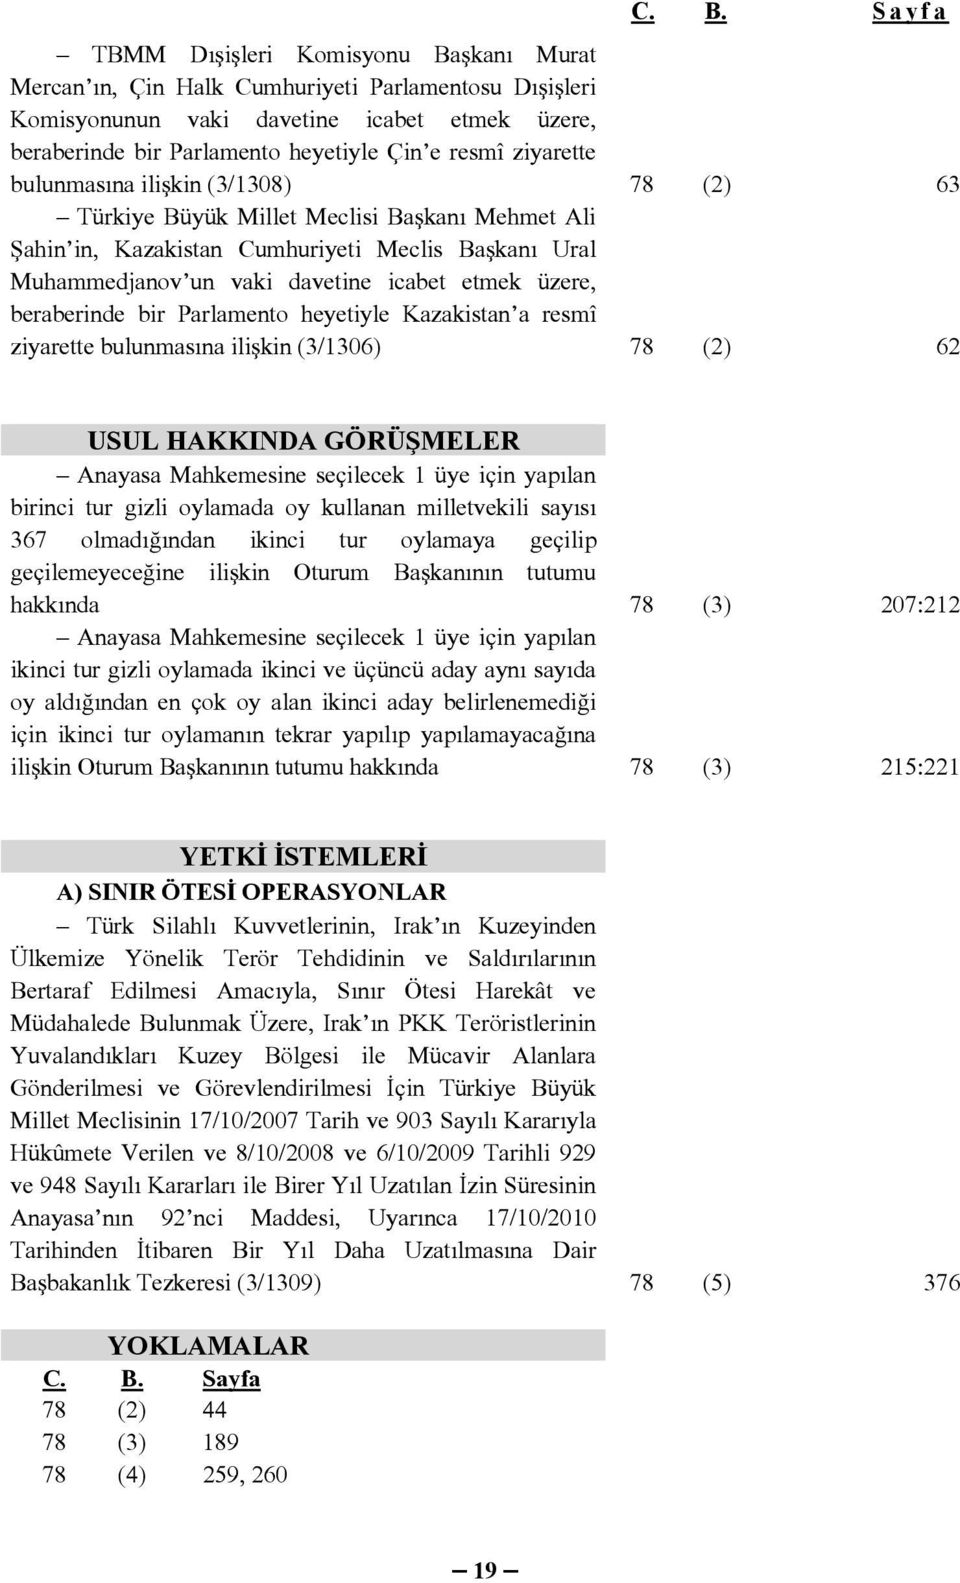 beraberinde bir Parlamento heyetiyle Kazakistan a resmî ziyarette bulunmasına ilişkin (3/1306) 78 (2) 62 USUL HAKKINDA GÖRÜŞMELER Anayasa Mahkemesine seçilecek 1 üye için yapılan birinci tur gizli